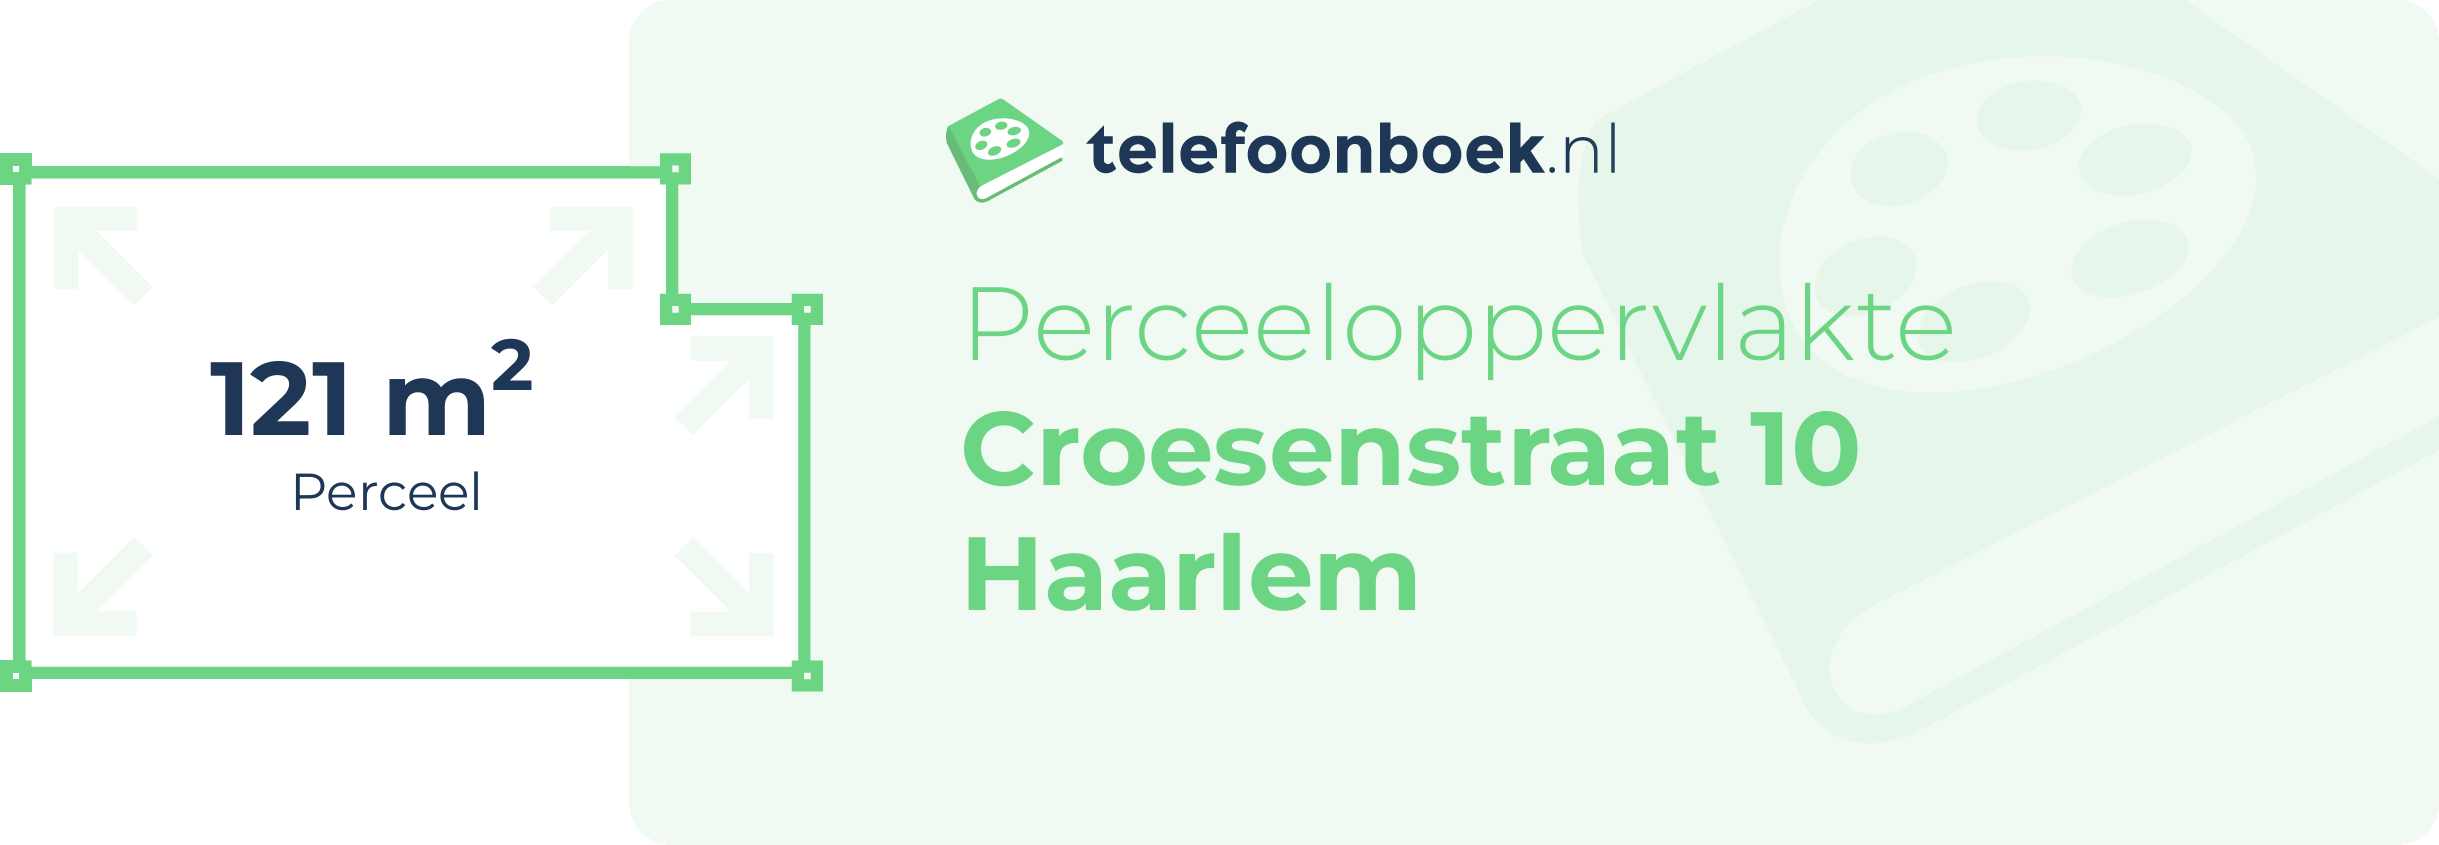 Perceeloppervlakte Croesenstraat 10 Haarlem